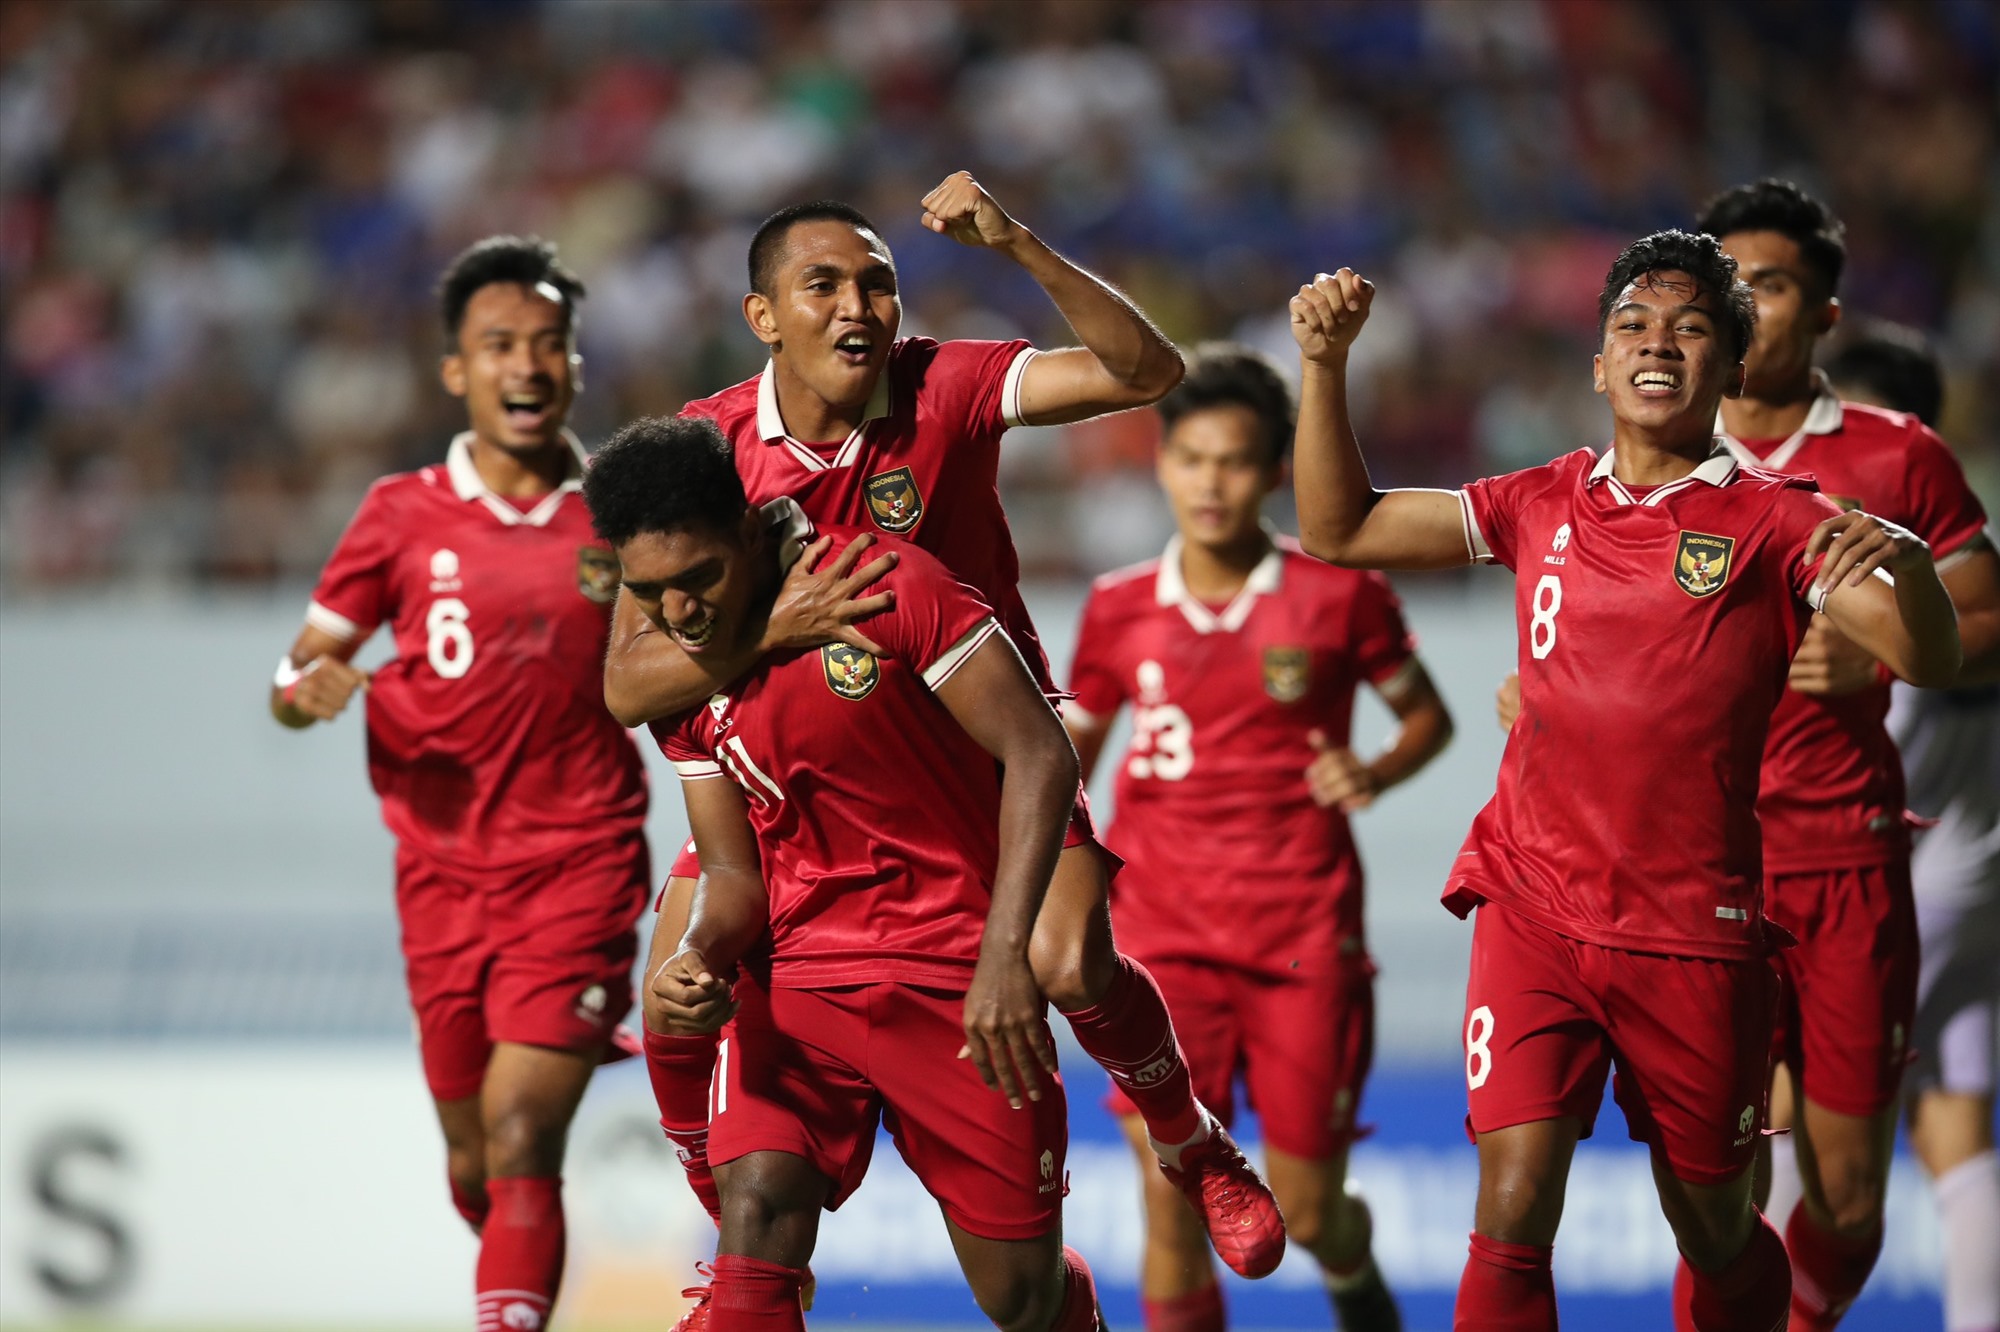 U23 Indonesia chơi phòng ngự chặt - phản công nhanh rất hiệu quả. Ảnh: Lâm Thoả